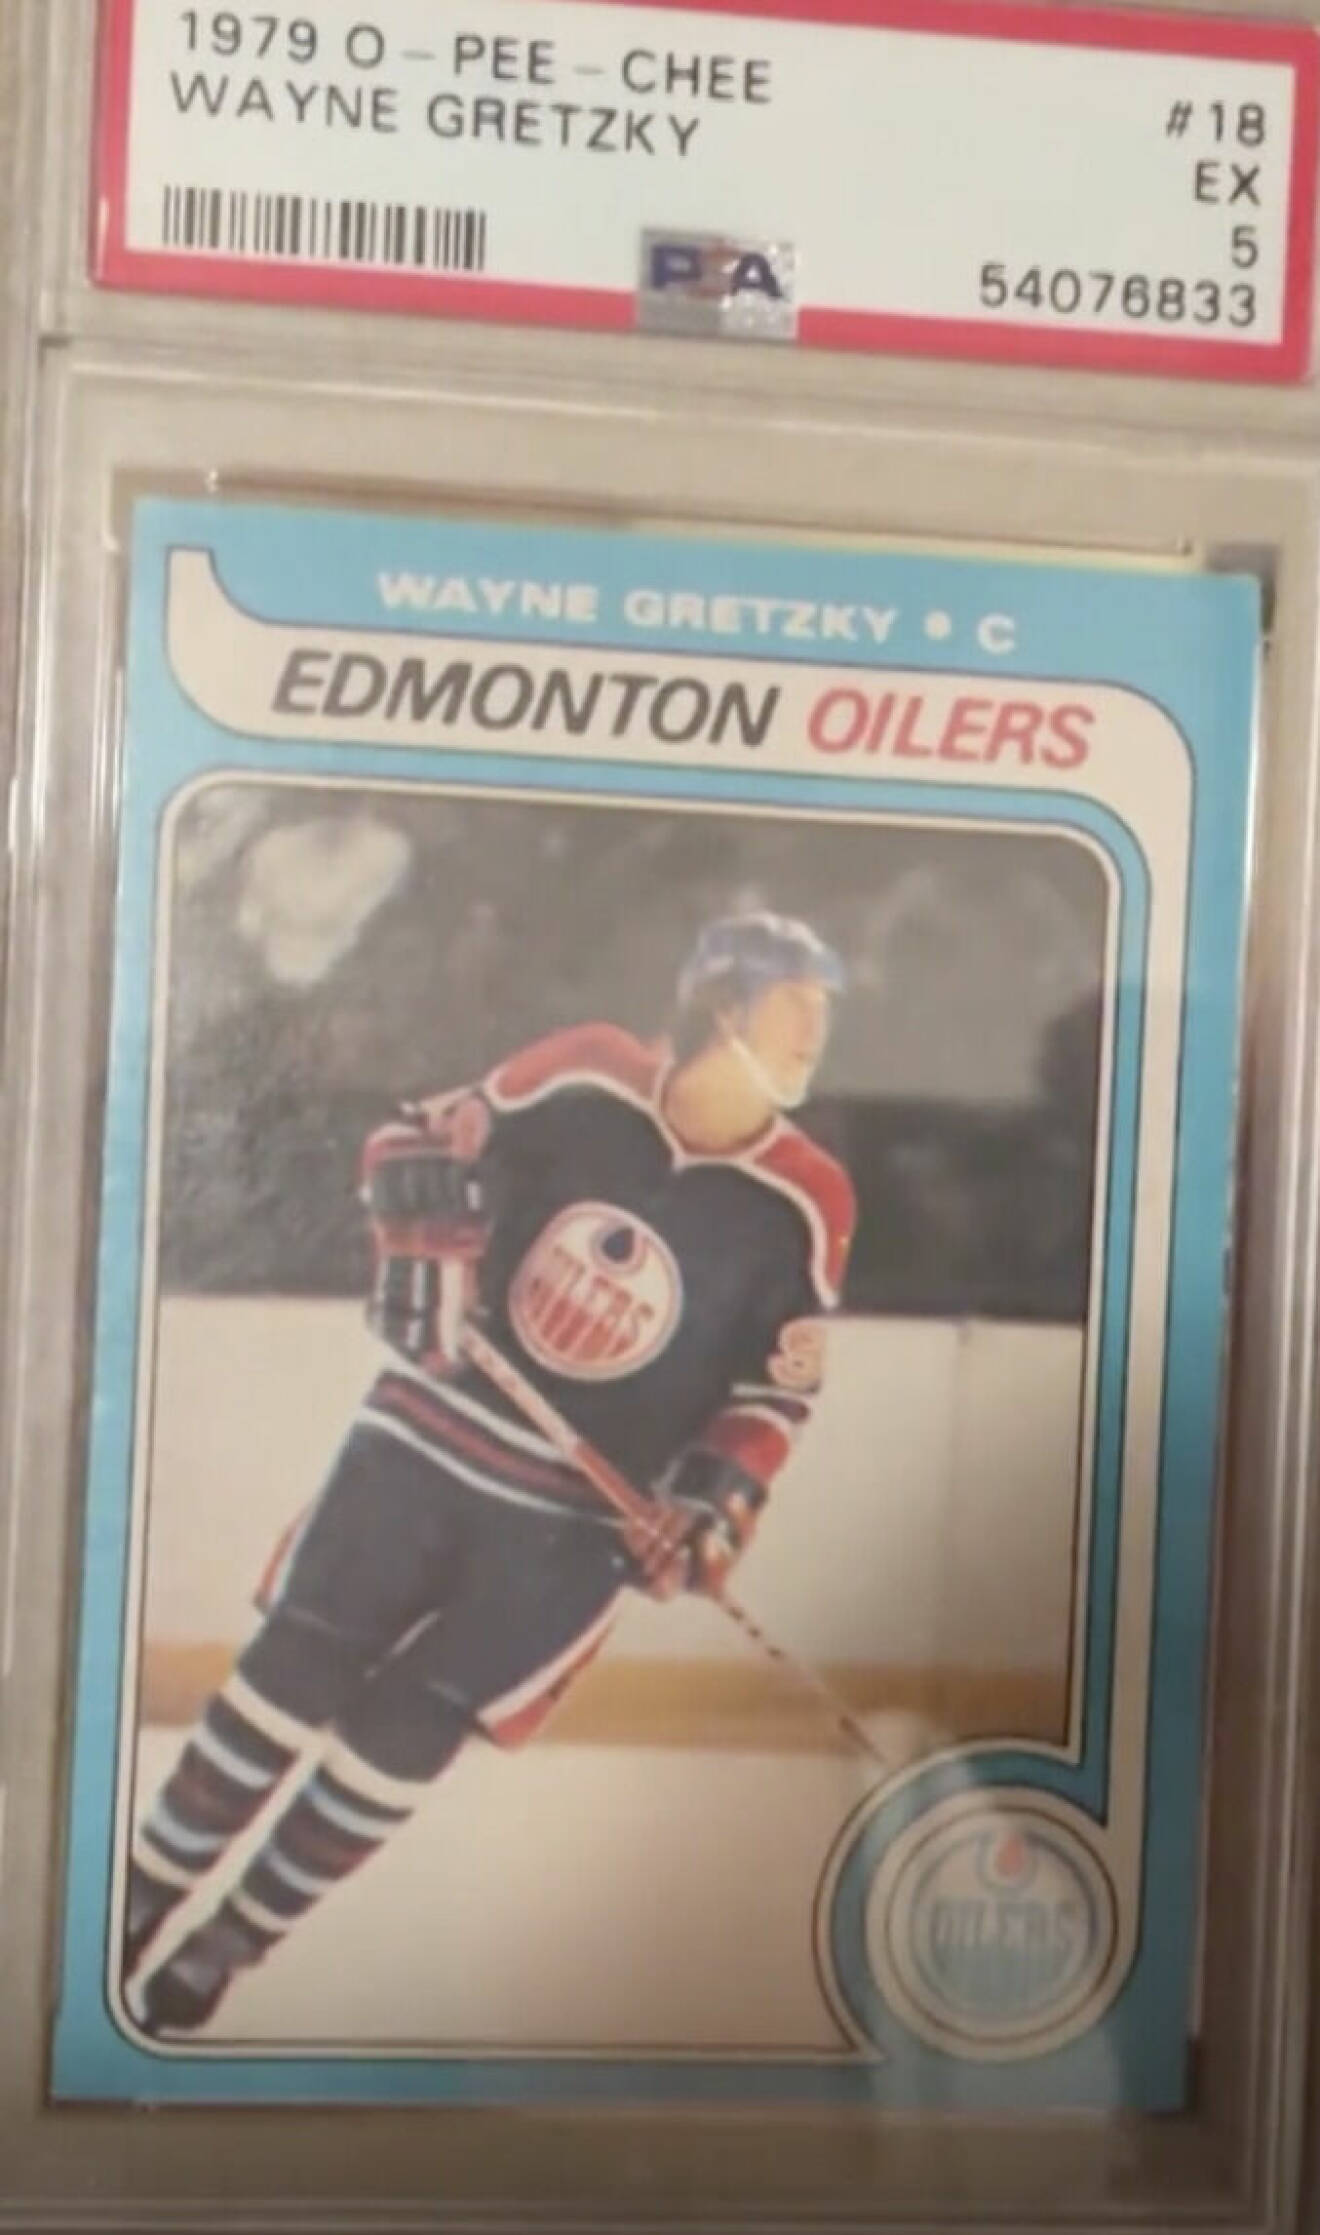 Wayne Gretzkys rookiekort från 1979.